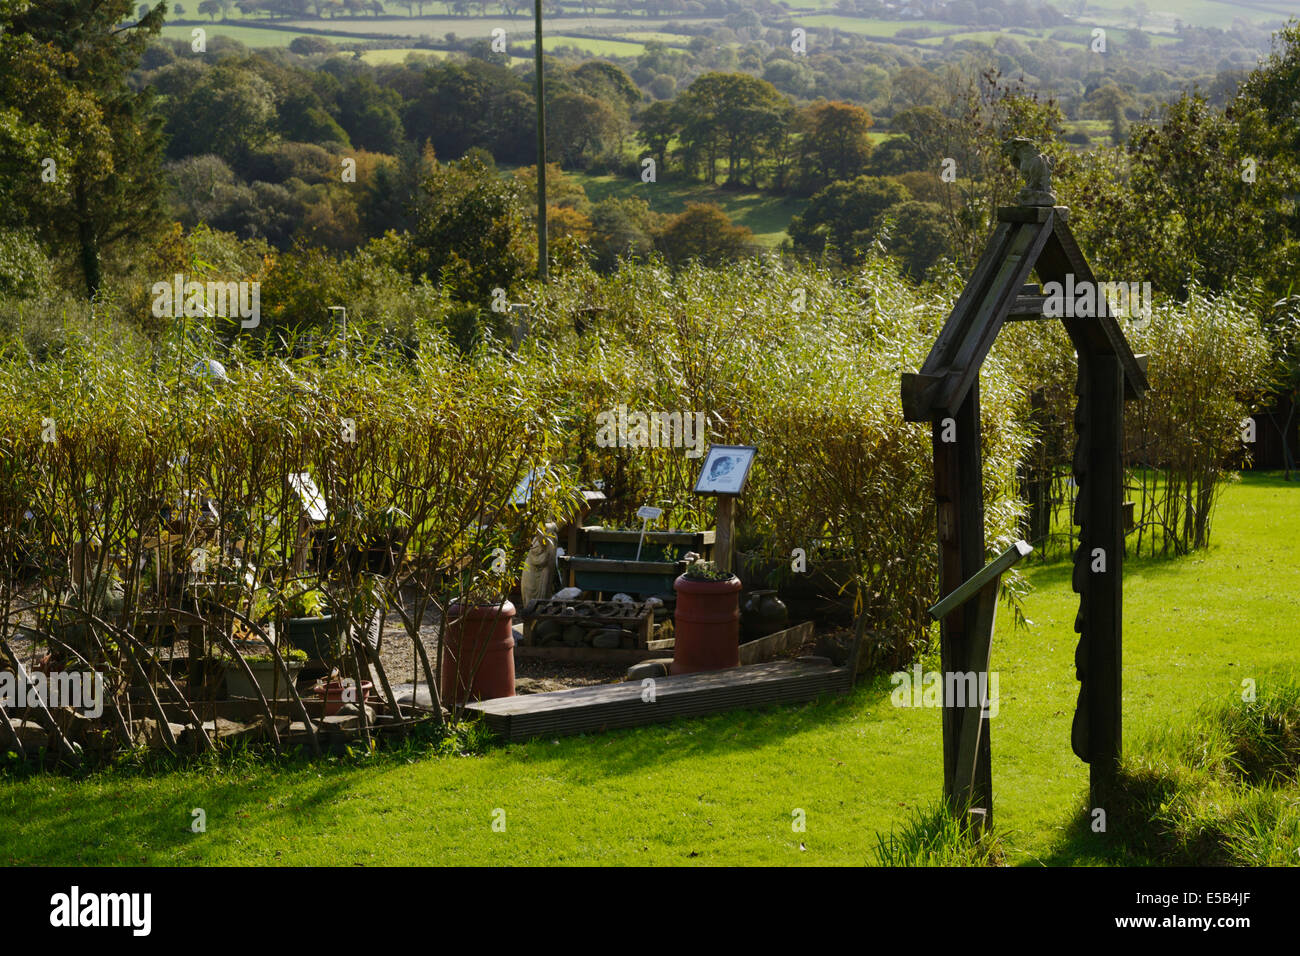 Le Jardin d'herbe planétaire à Sculptureheaven Rhydlewis, jardin de sculptures, Llandysul, Pays de Galles, Royaume-Uni. Banque D'Images